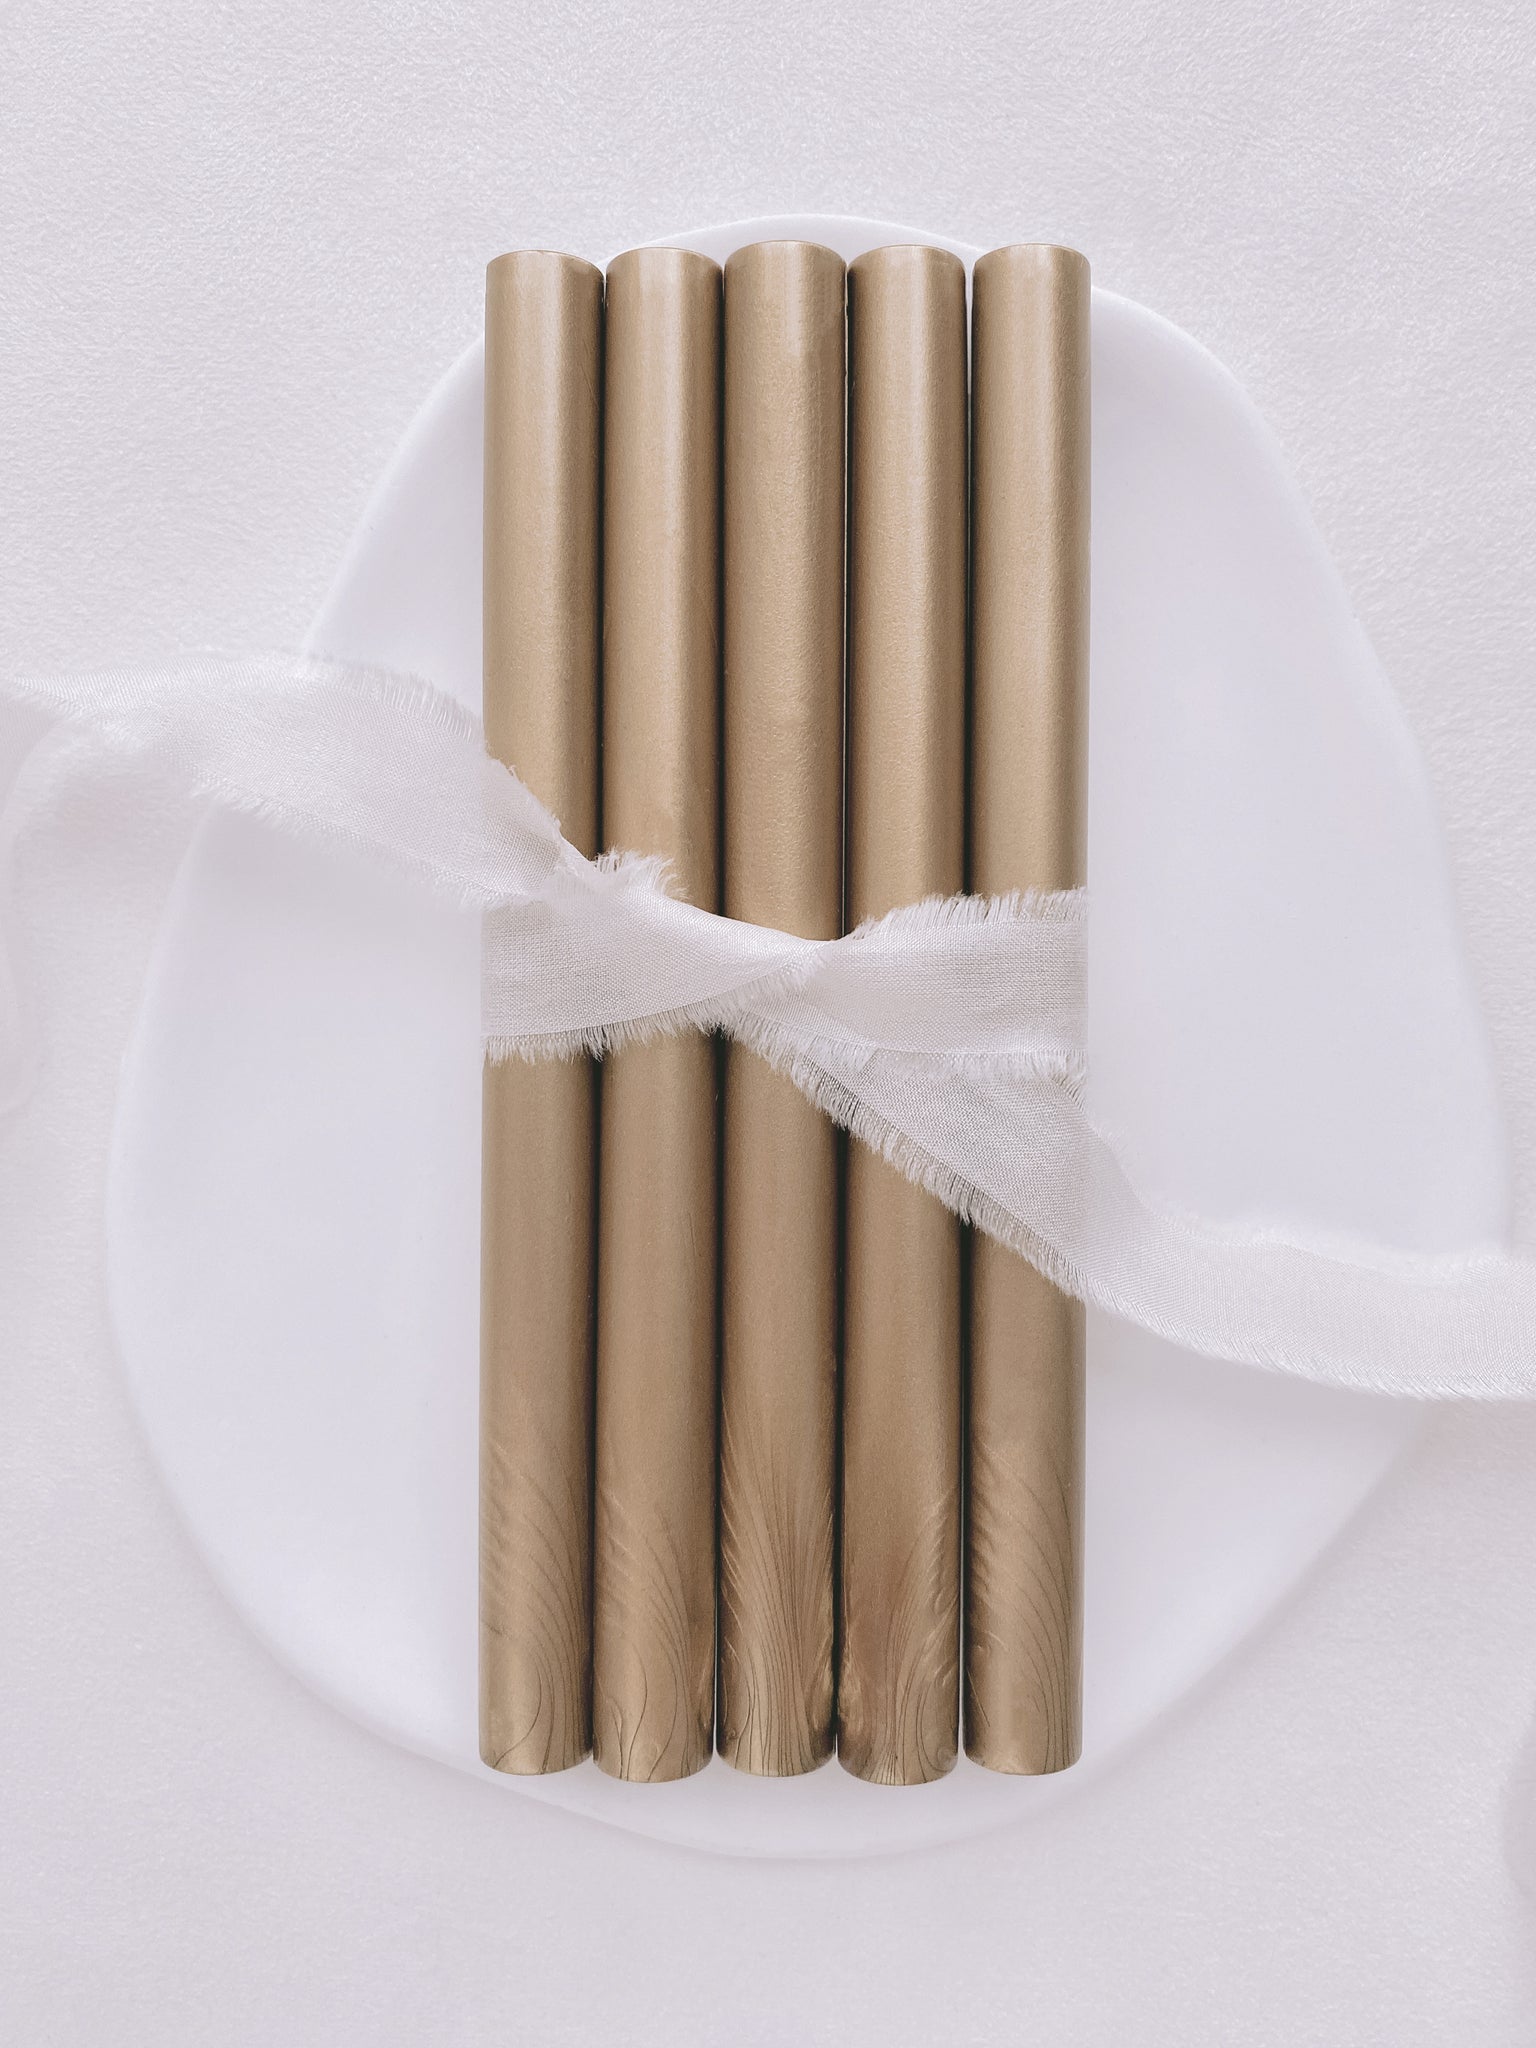 a set of 5 golden dune sealing wax sticks